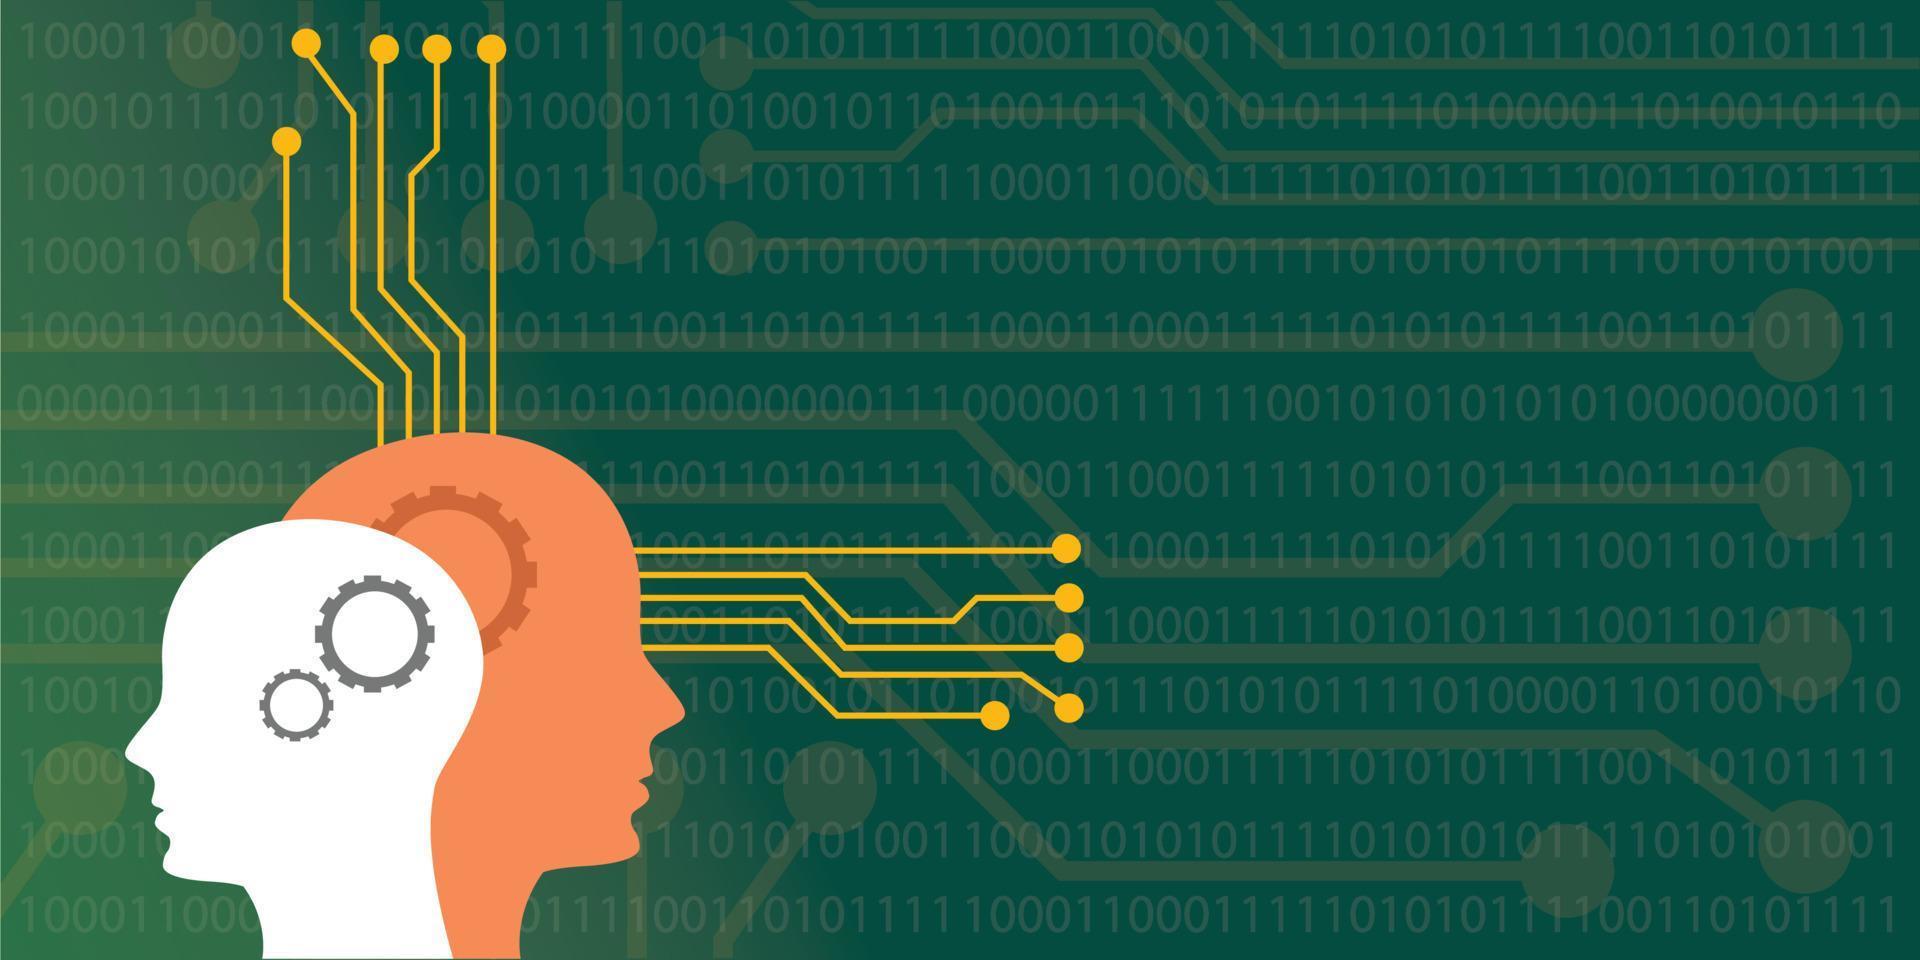 kunstmatig intelligentie- concept illustratie met hoofd menselijk robot met neuro bord systeem vector grafisch illustratie